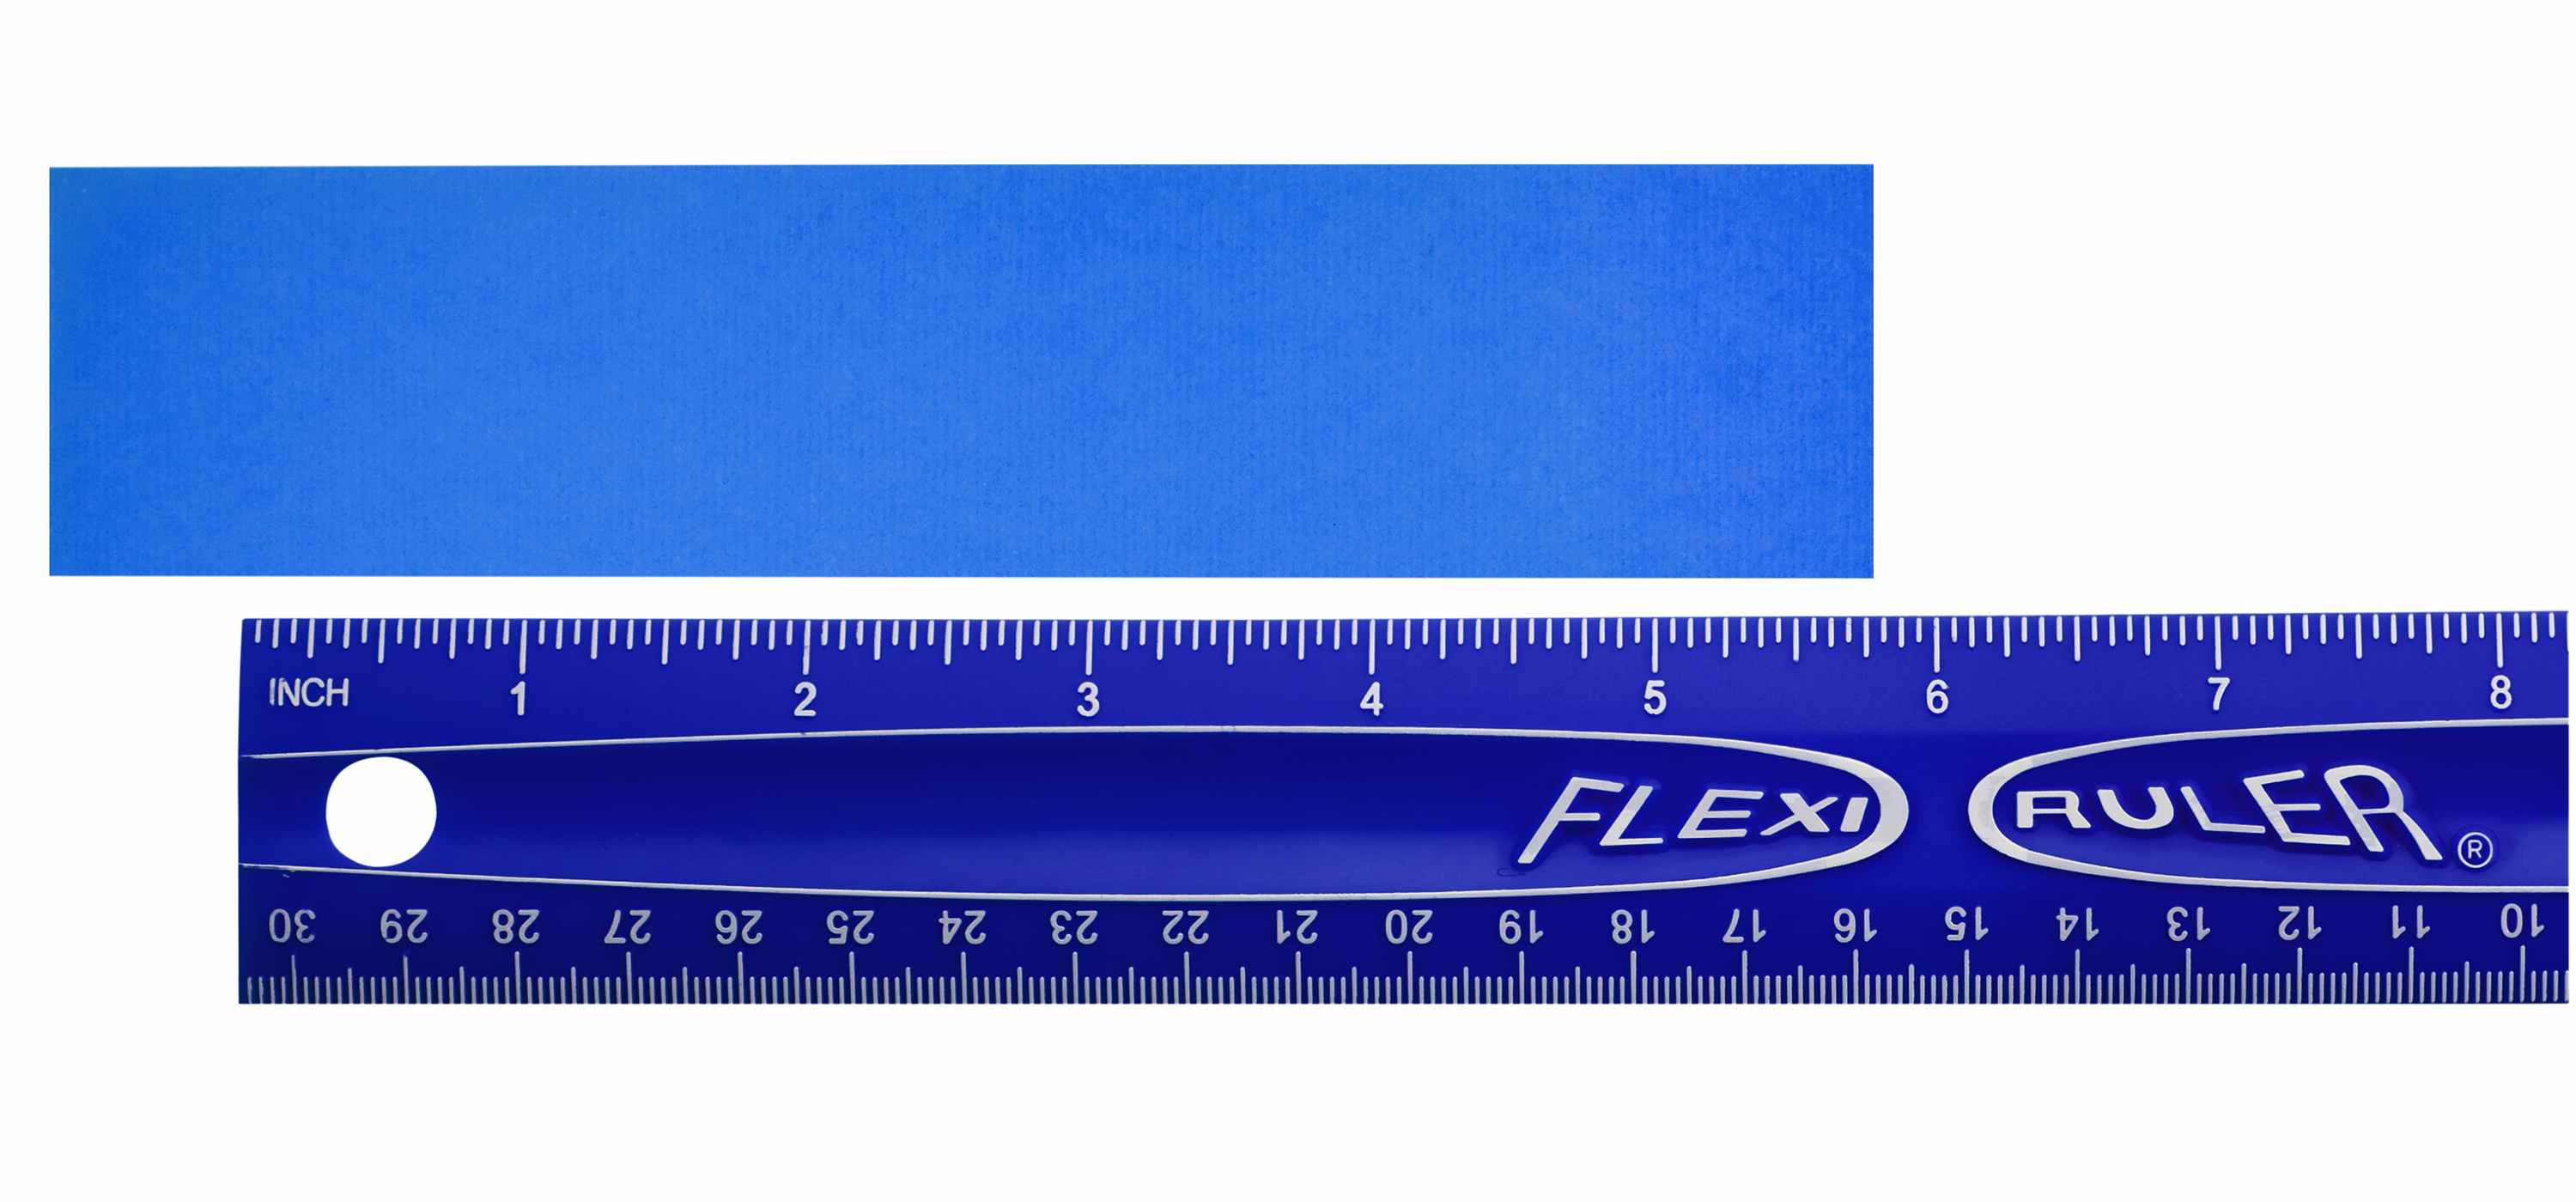 It's Academic Blue Flexible Ruler - Shop Tools & Equipment at H-E-B